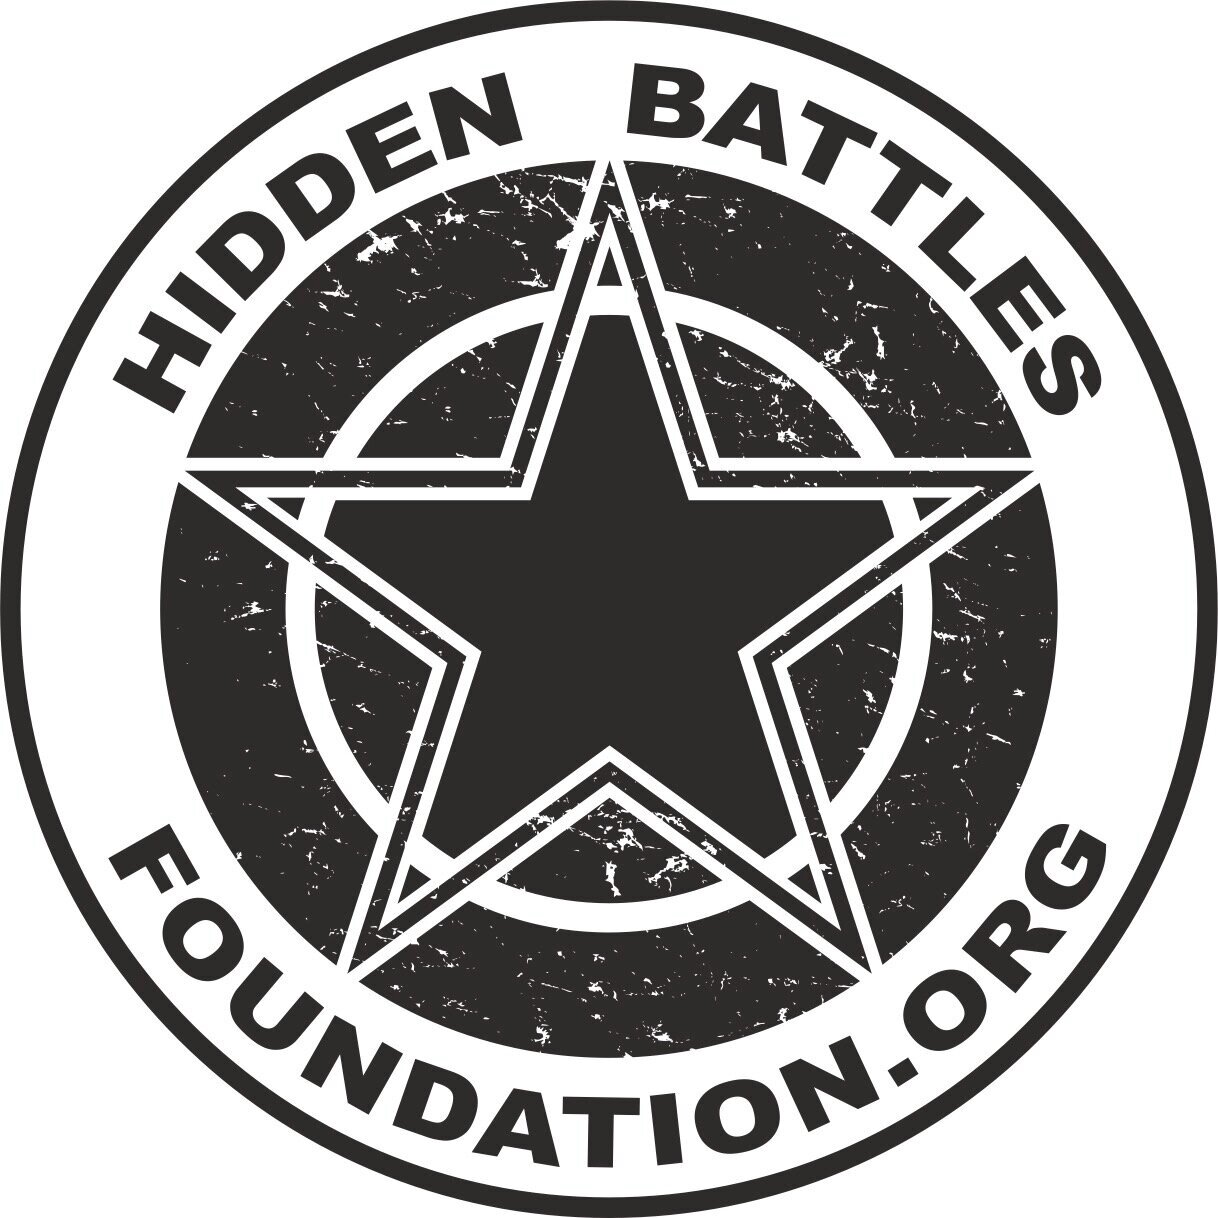 Hidden Battles Foundation